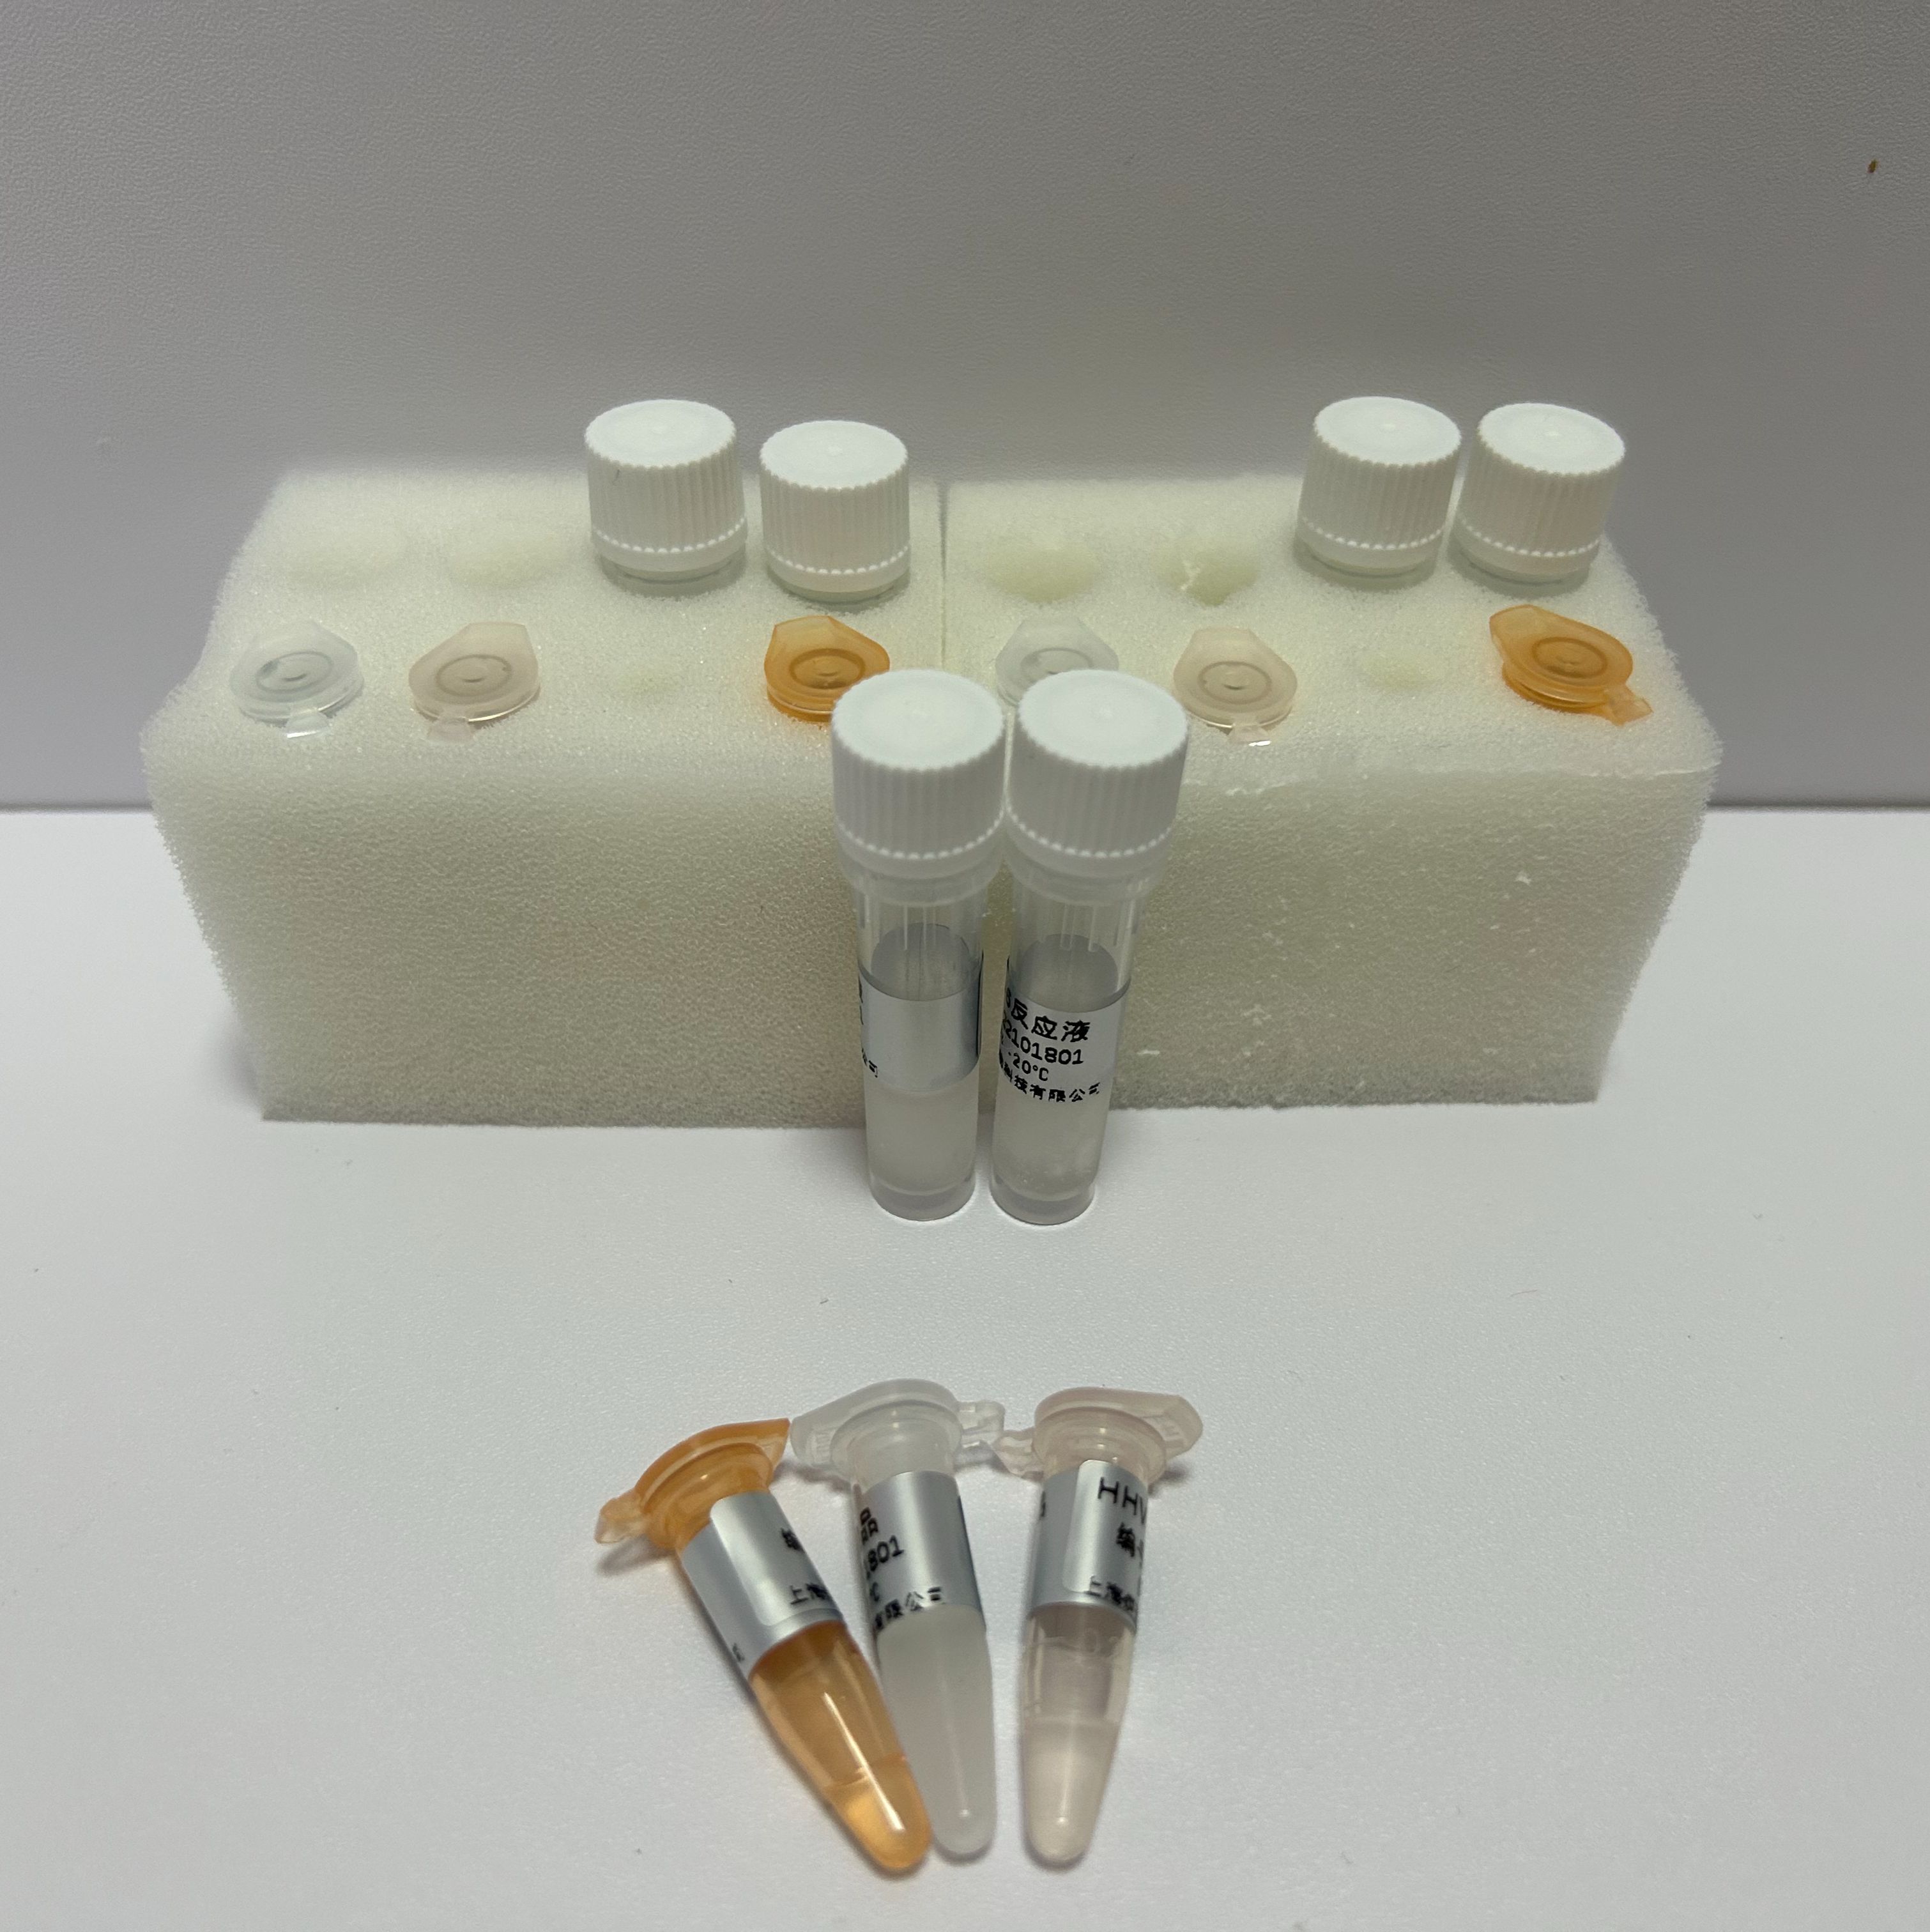 人腺病毒D81型探针法荧光定量PCR试剂盒